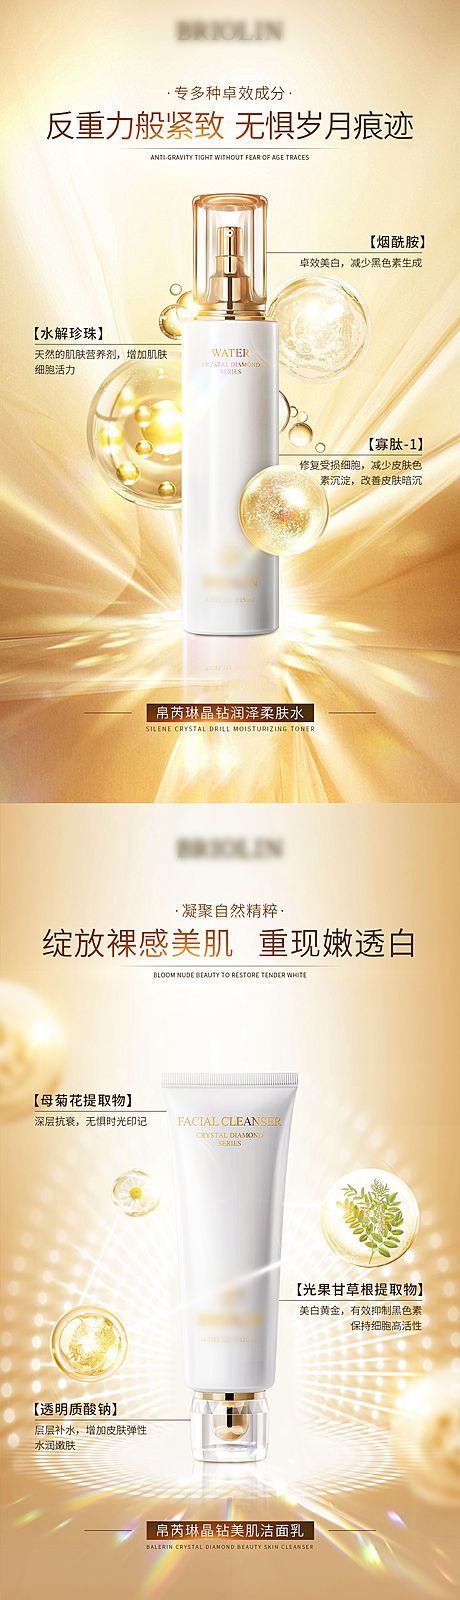 仙图网-奢华护肤品促销宣传系列海报